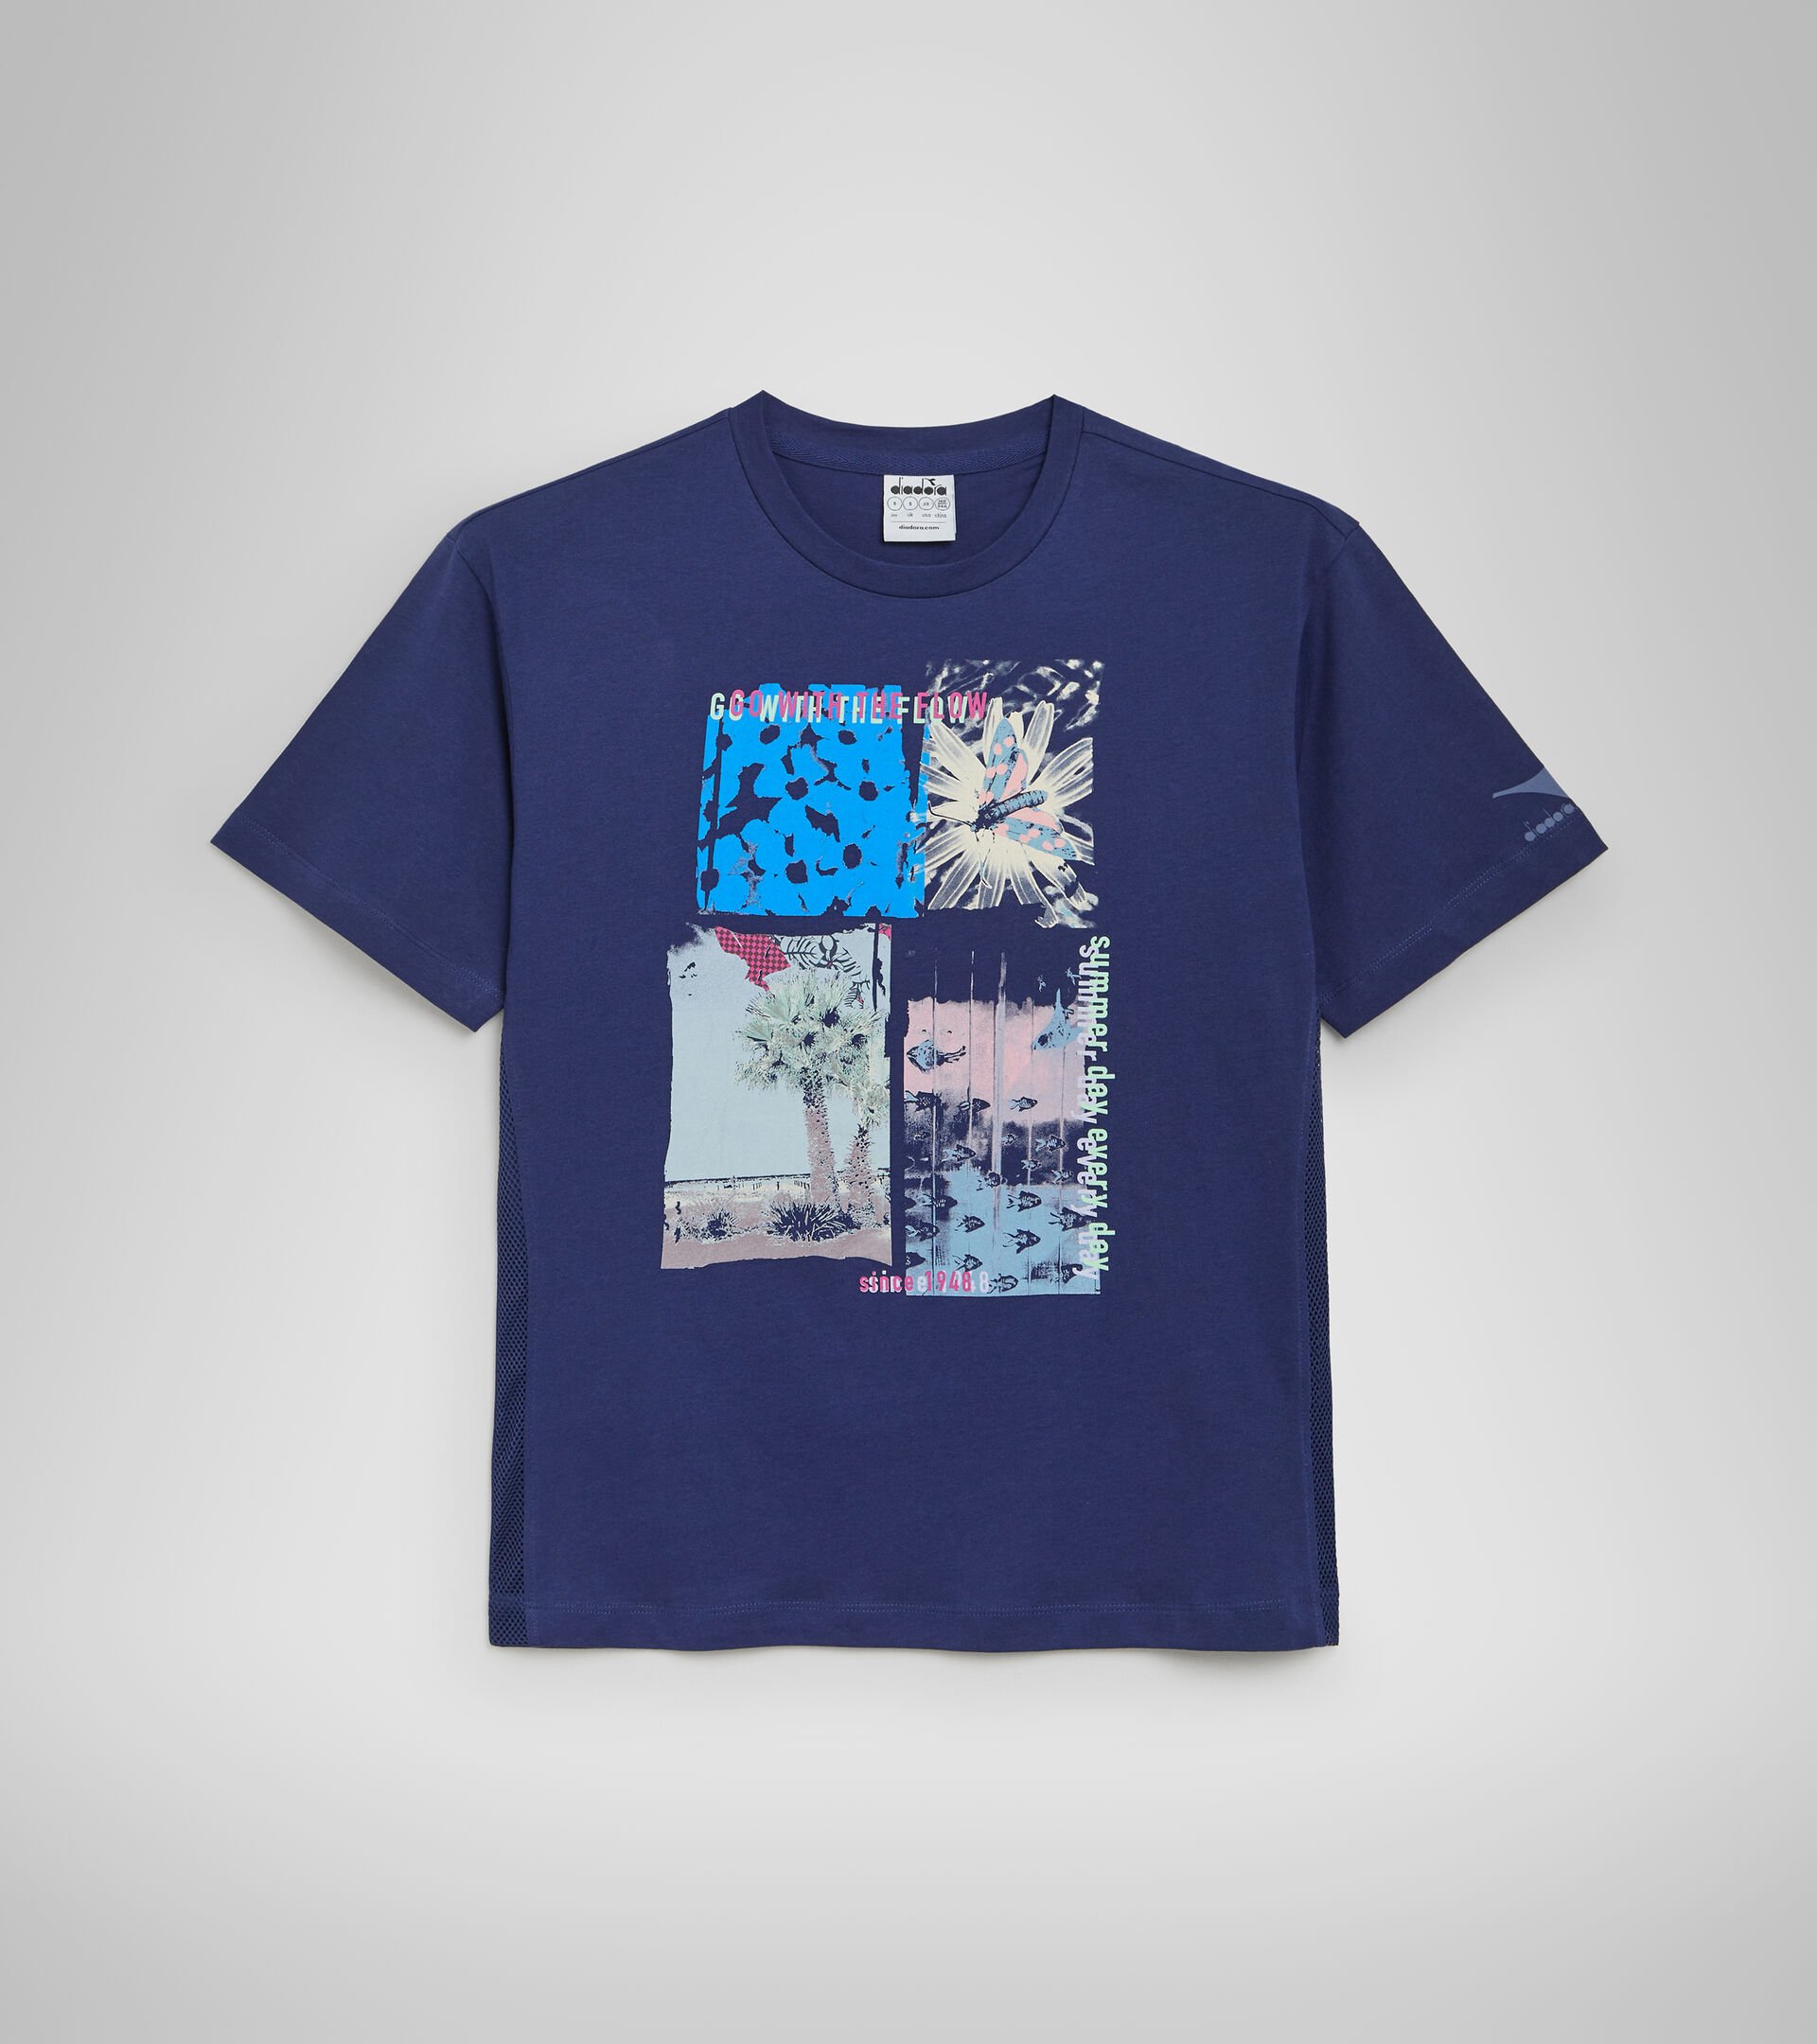 Cotton sports T-shirt - Women L. T-SHIRT SS FLOW DEEP COBALT BLUE - Diadora